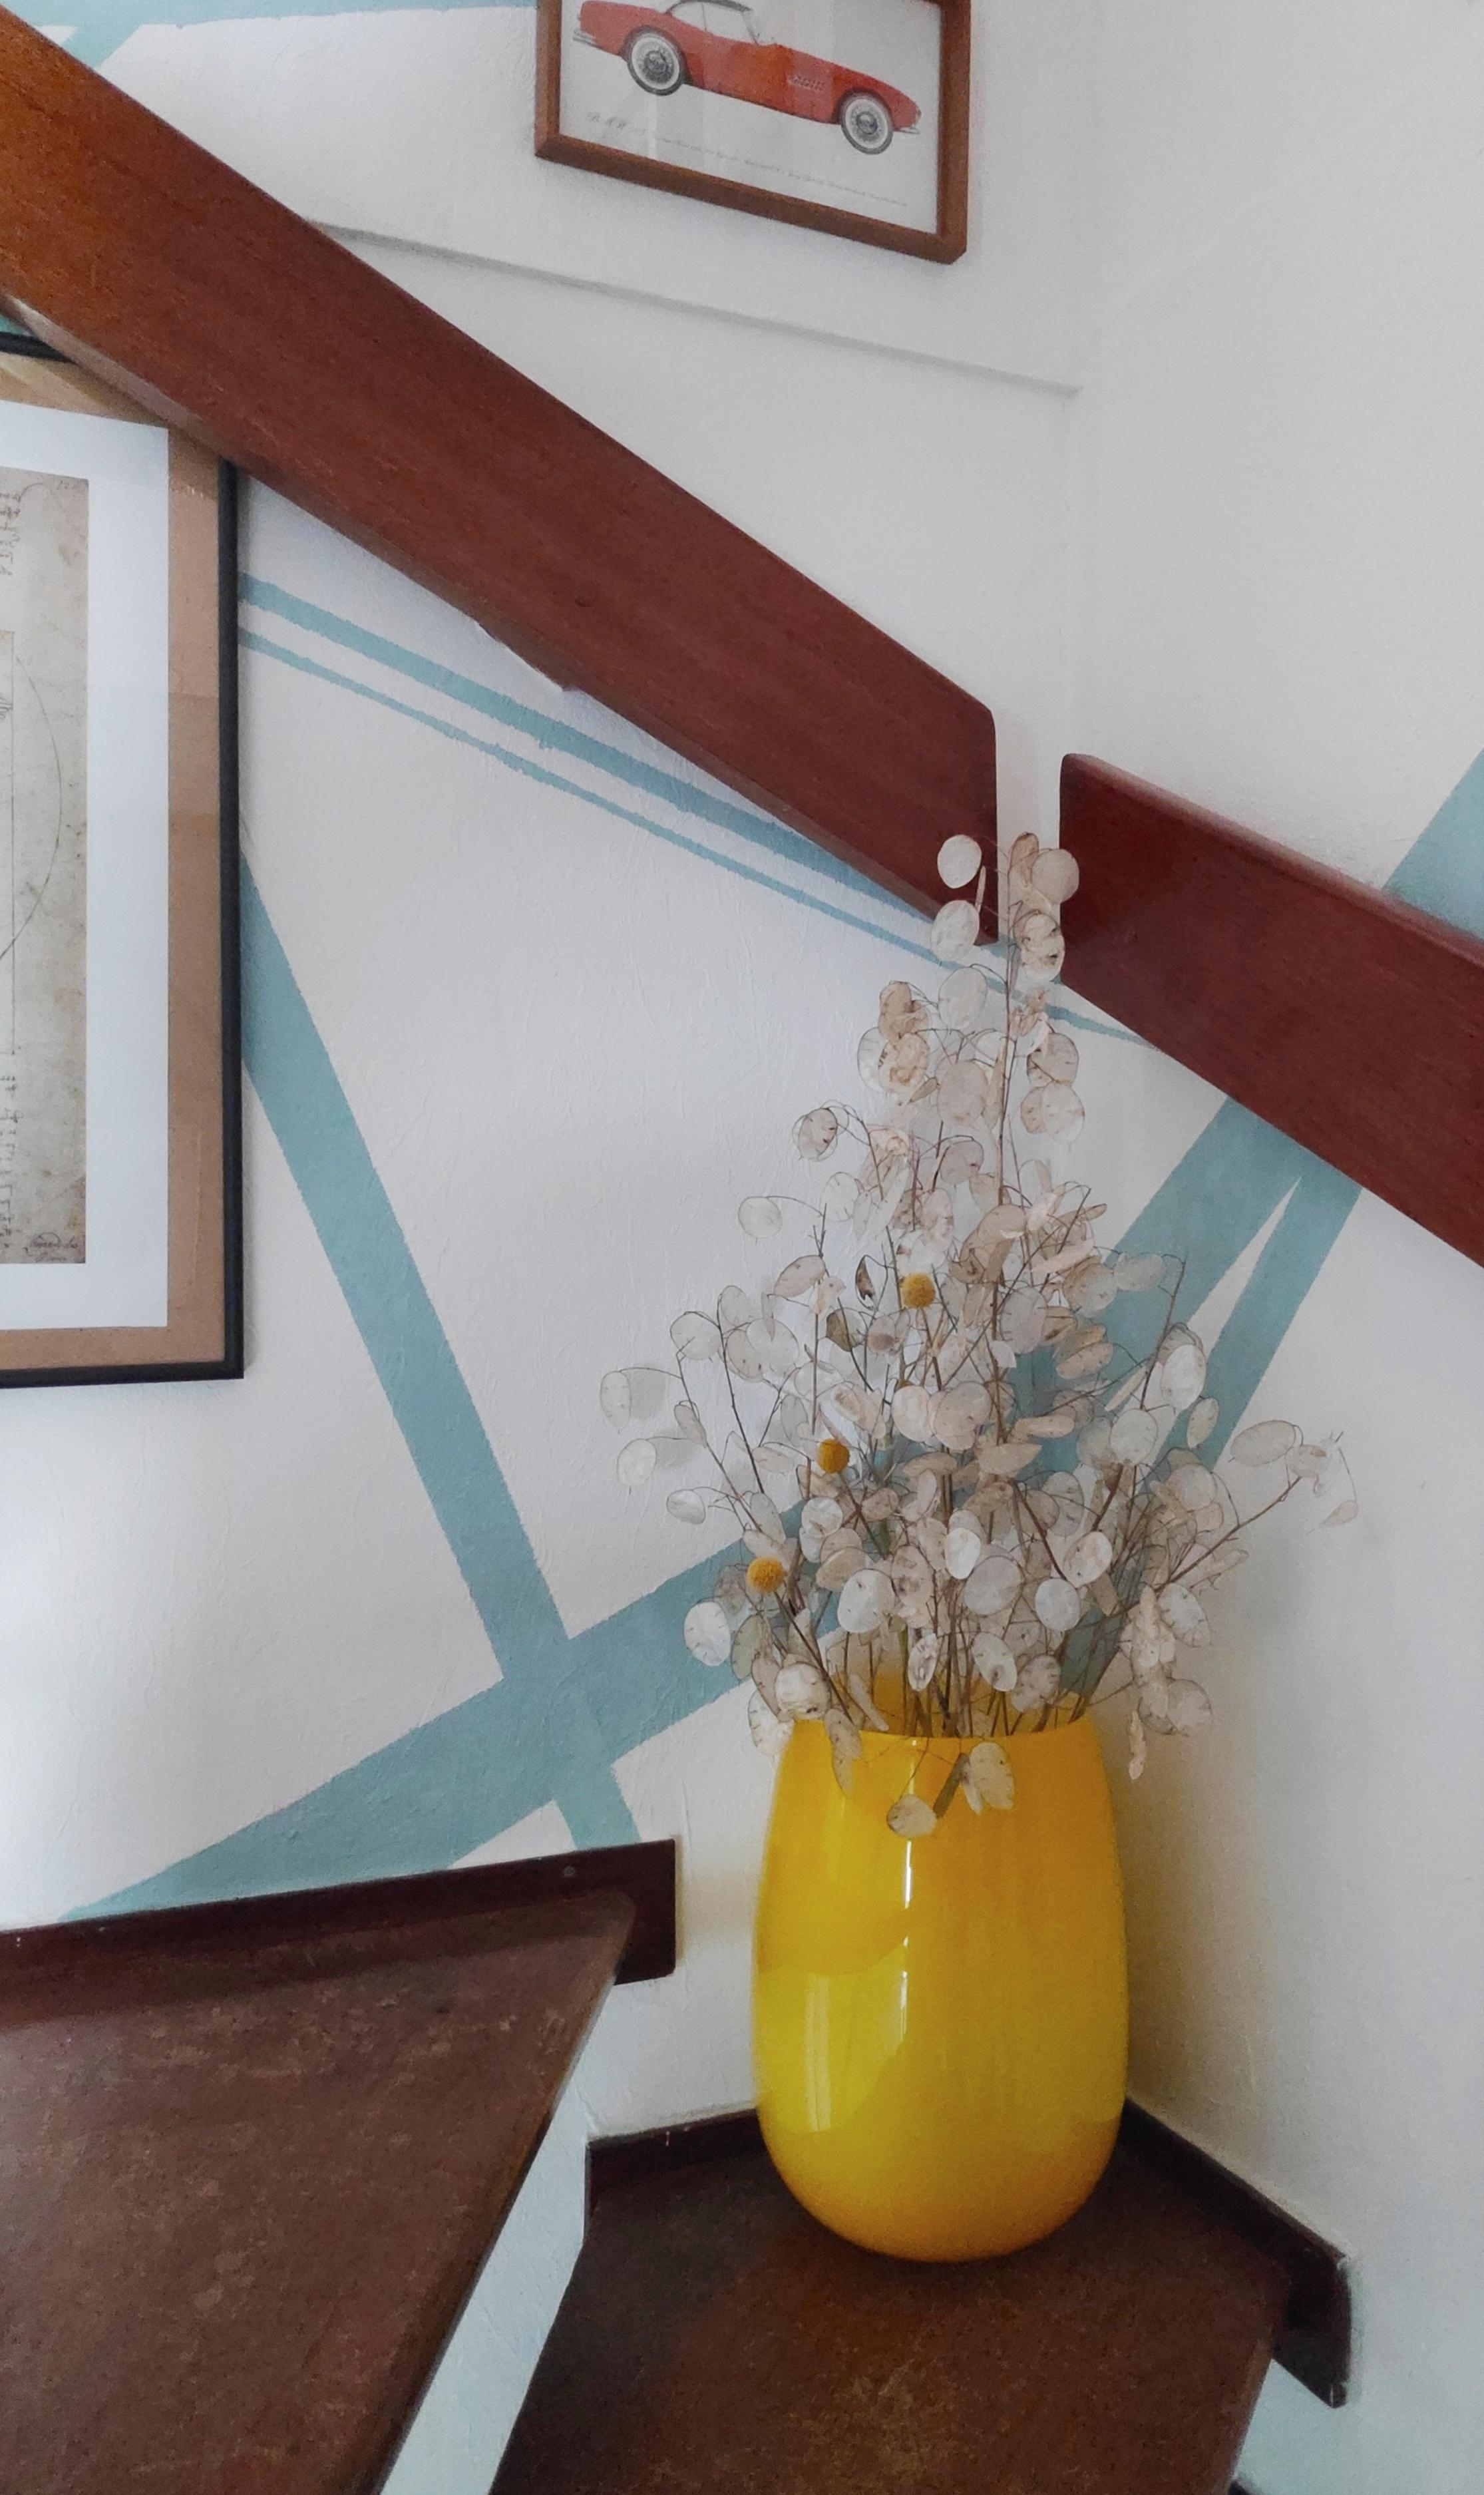 .Akzent in der Ecke auf der Treppe.
#Lunaria #Deko #Vase #Trockenblumen #Akzent #Kontrast #Farbspiel